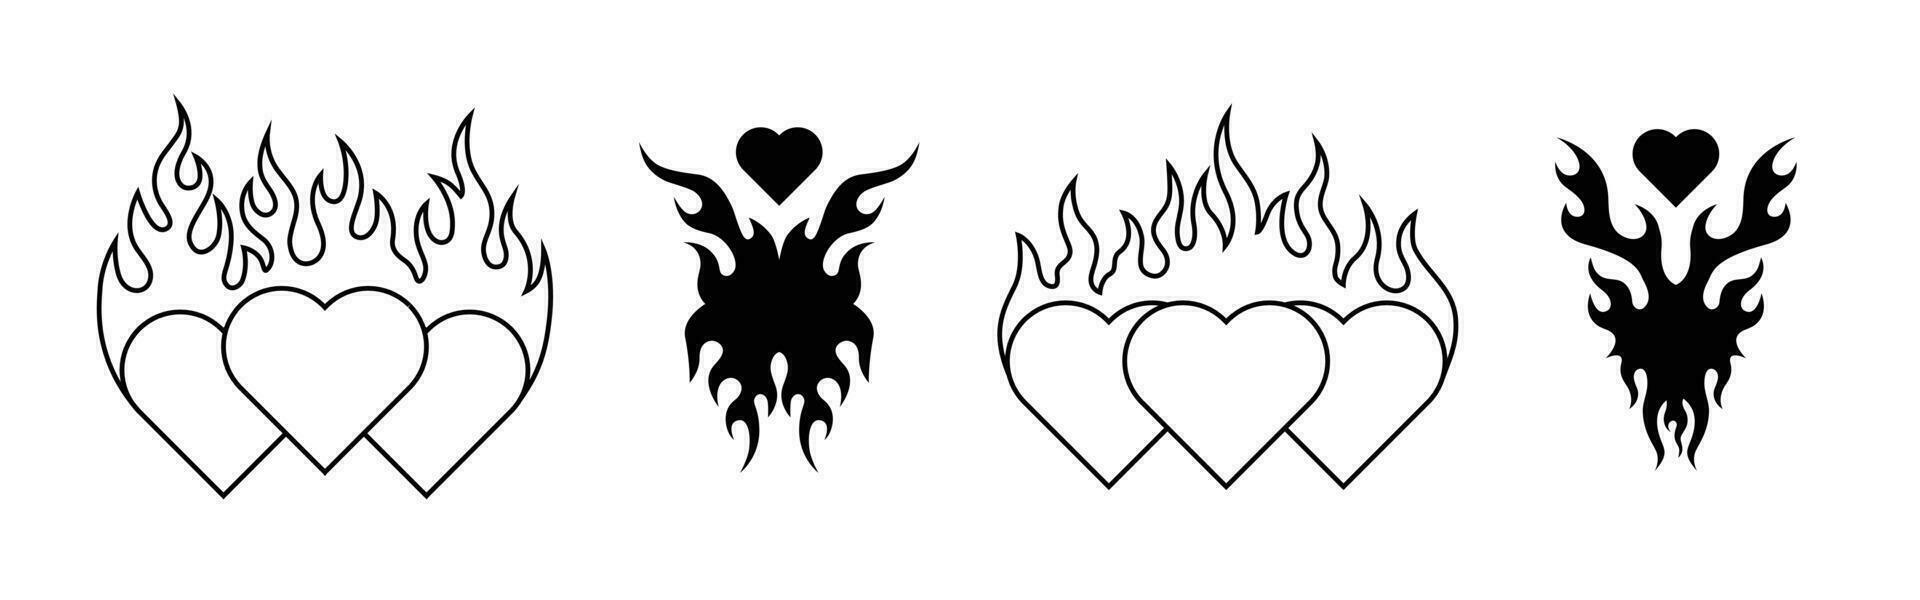 impostato di cuore forma con fuoco simbolo. mano disegnato tatuaggio elemento vettore